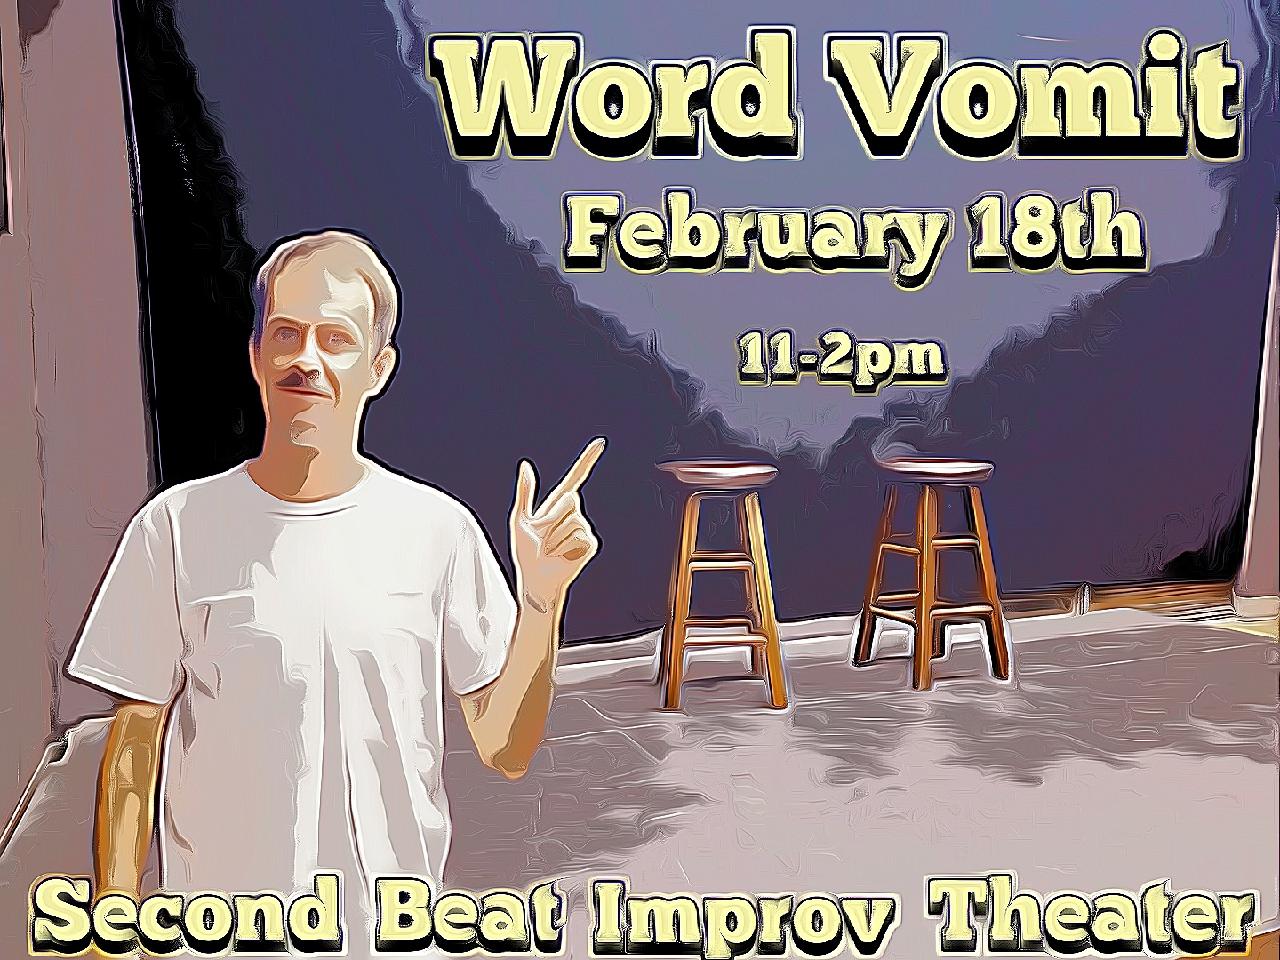 Word Vomit - A workshop on specificity